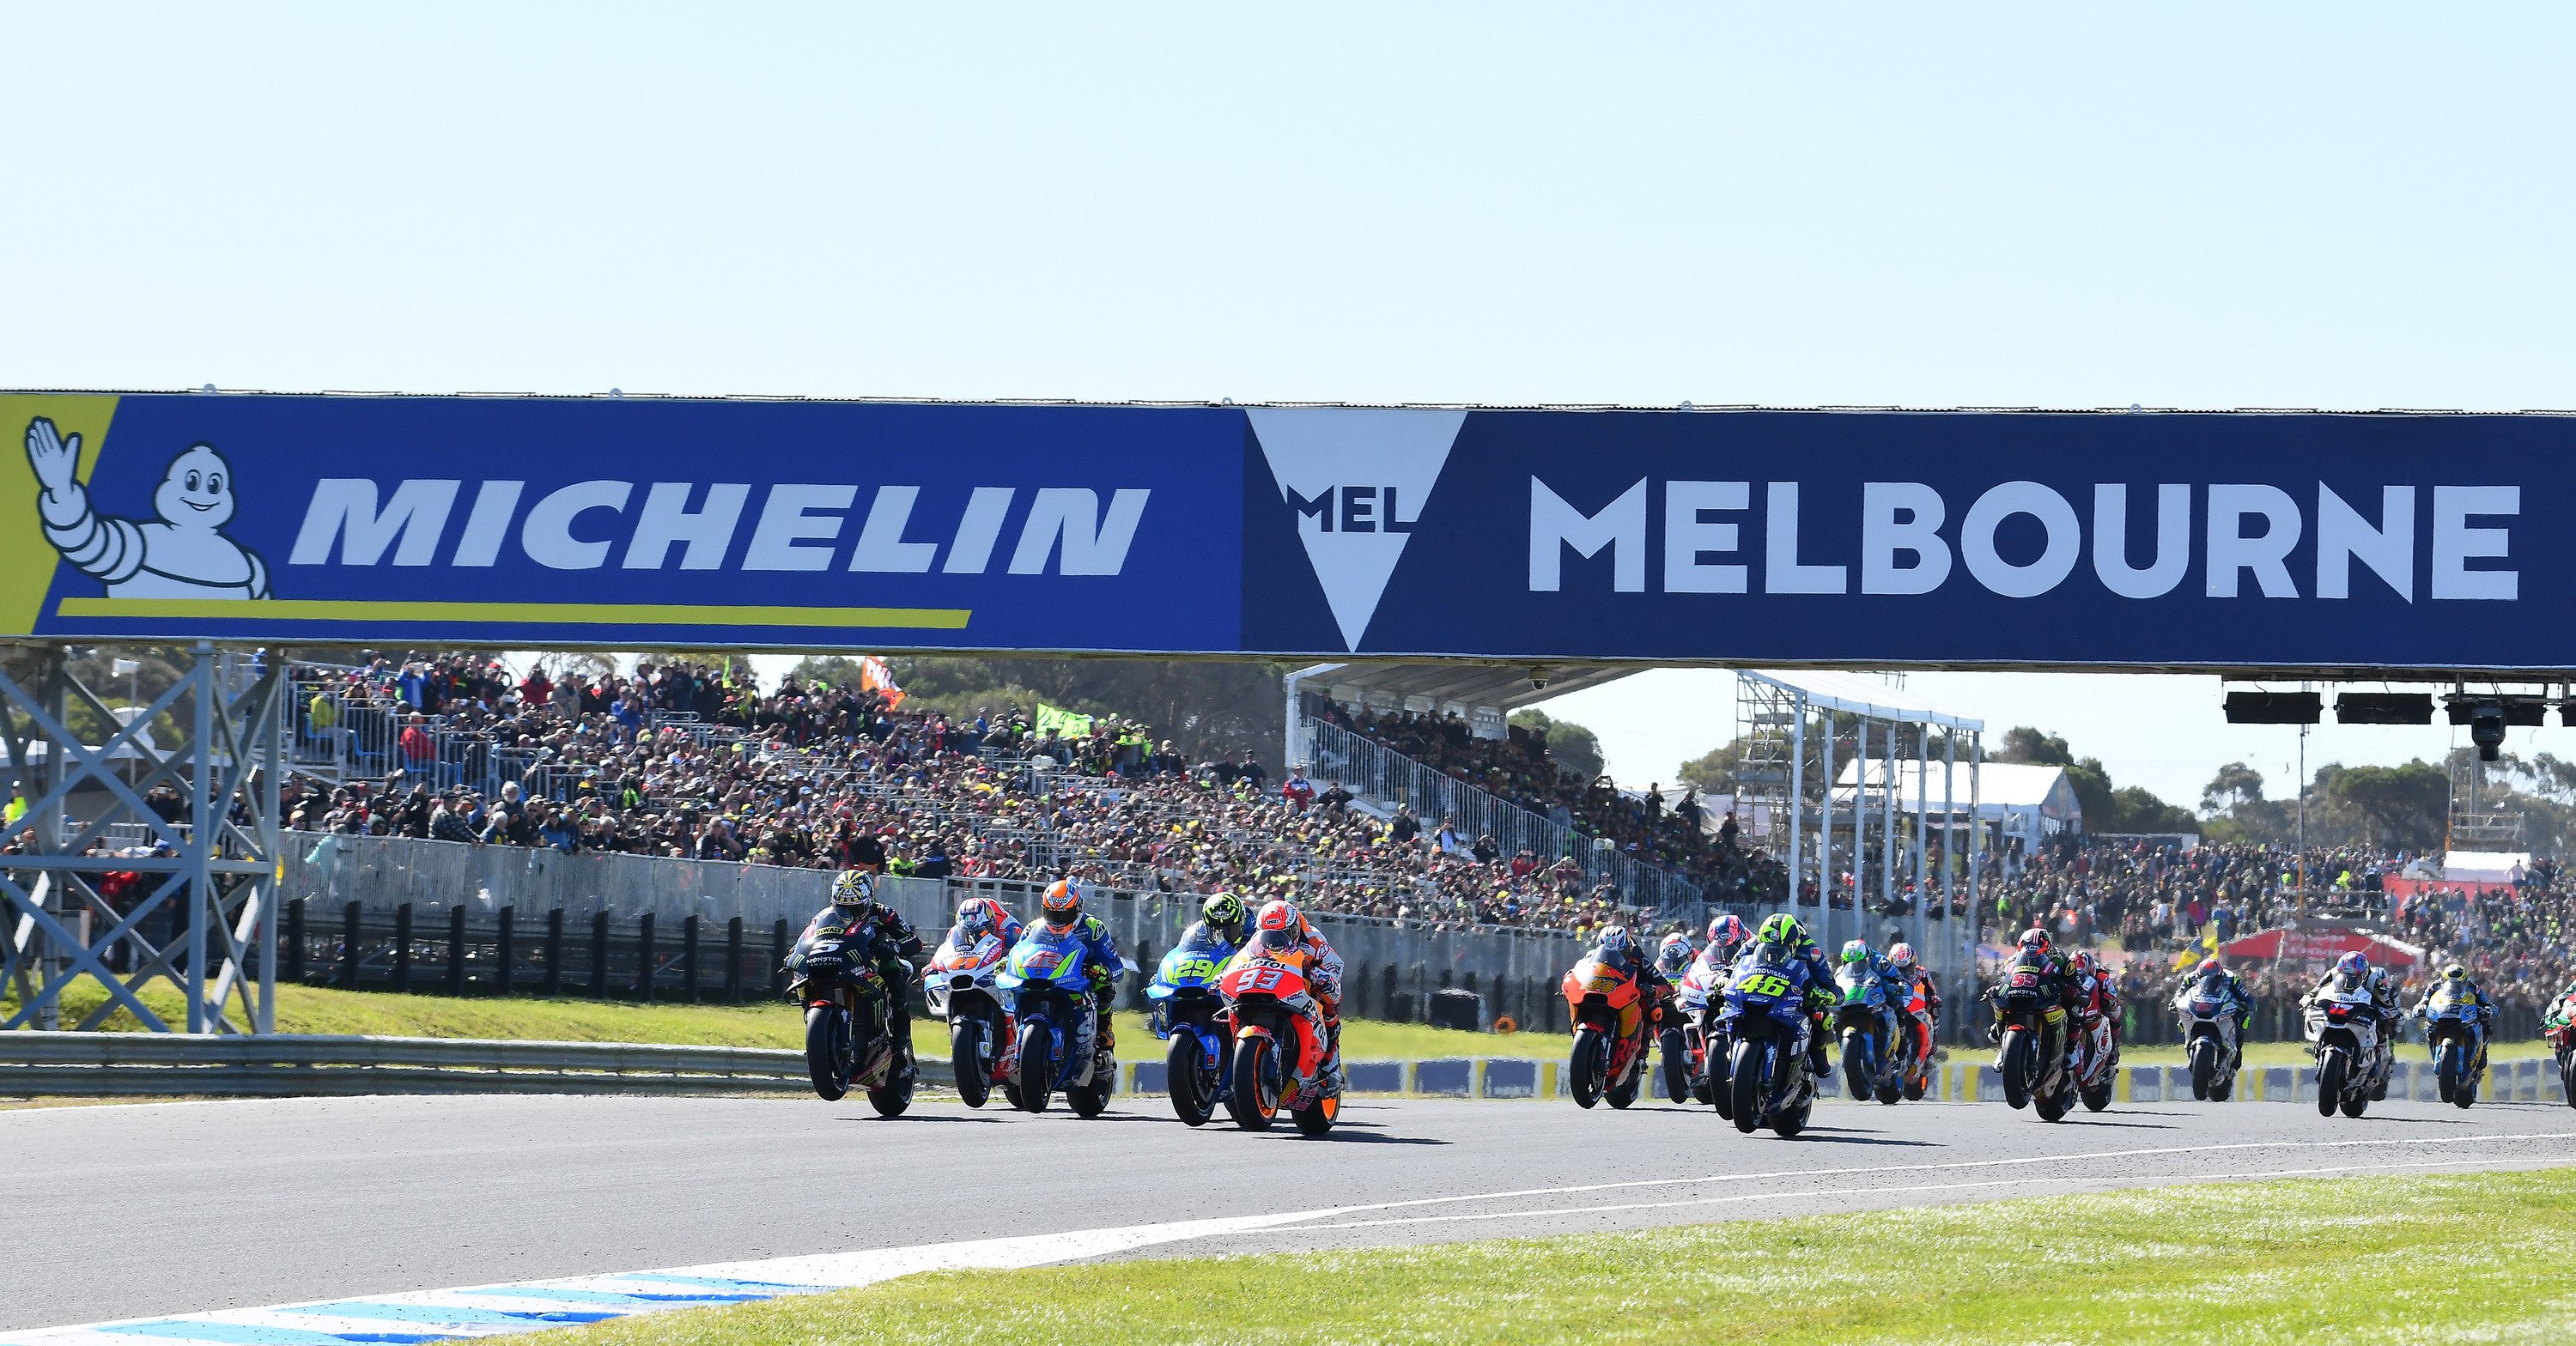 Chi vincer&agrave; la gara MotoGP in Australia?